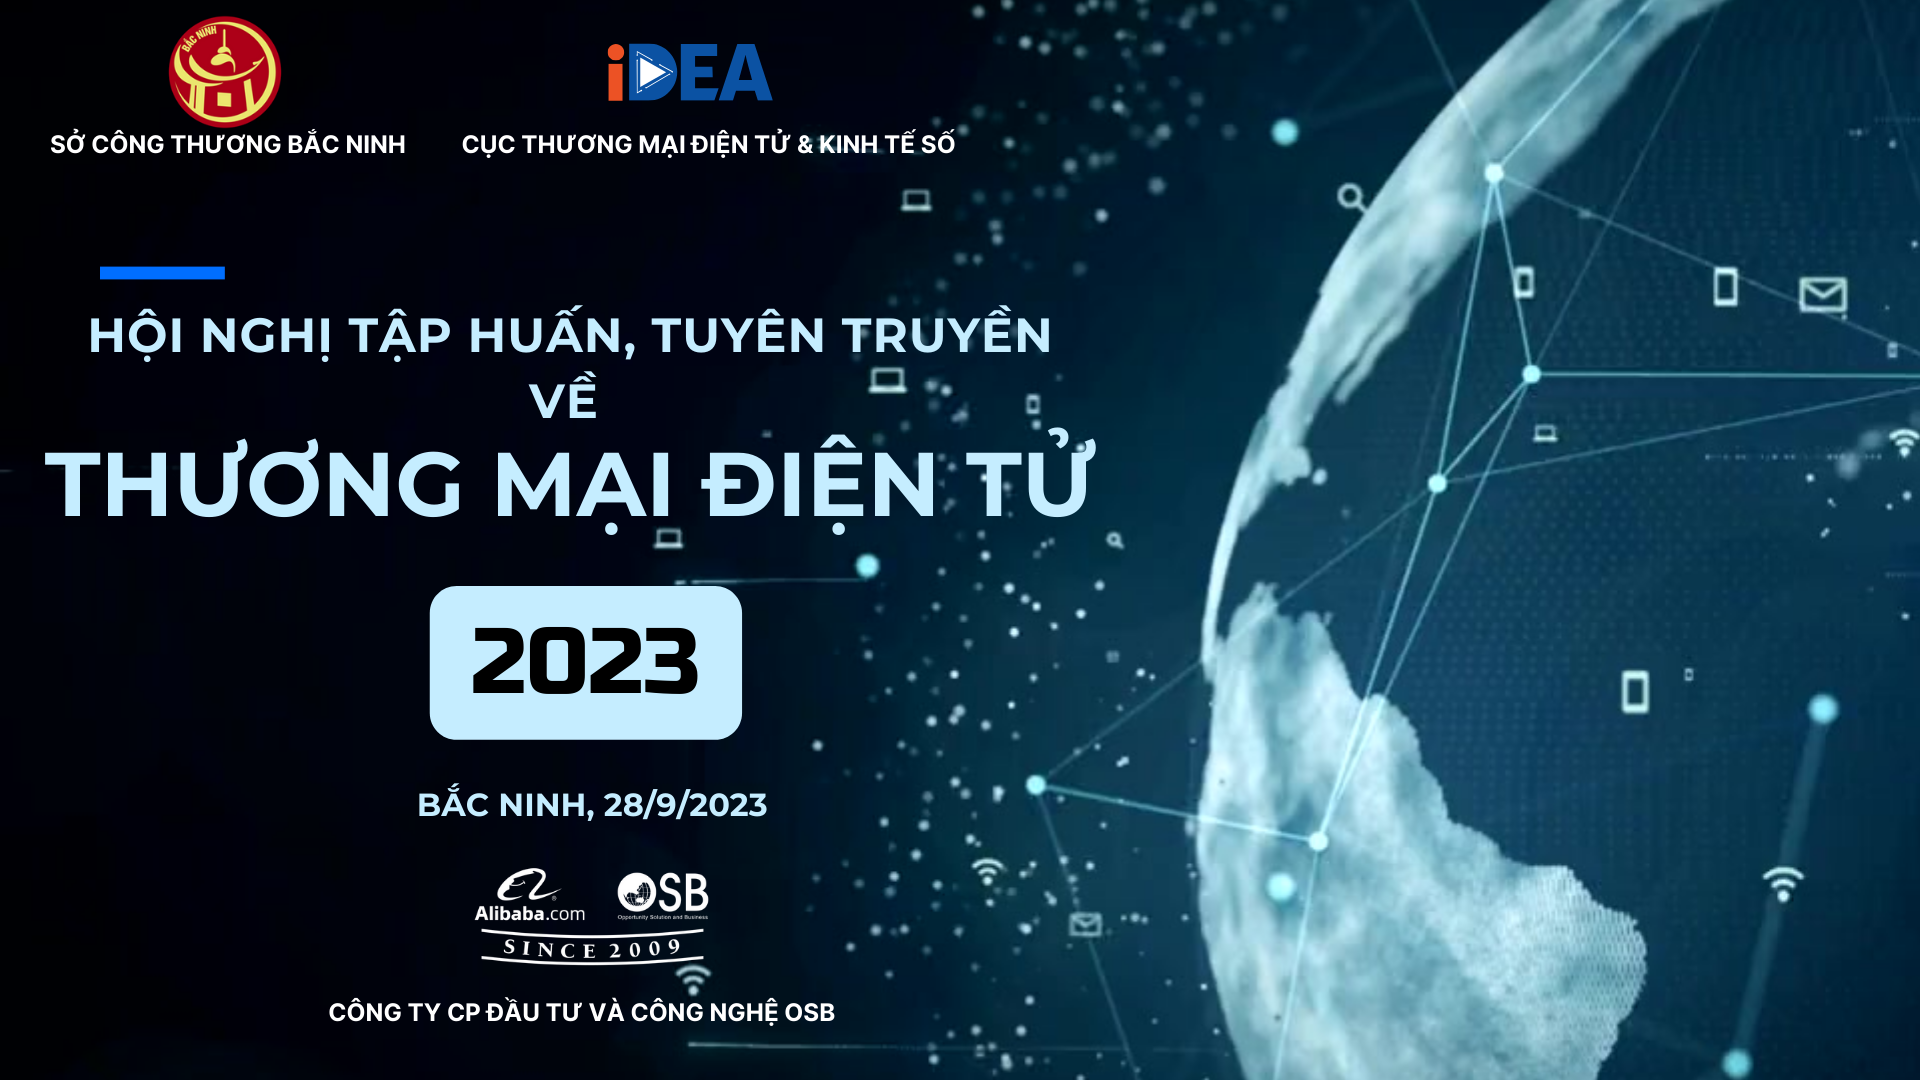 Tập huấn đào tạo Thương mại điện tử tại Bắc Ninh 2023